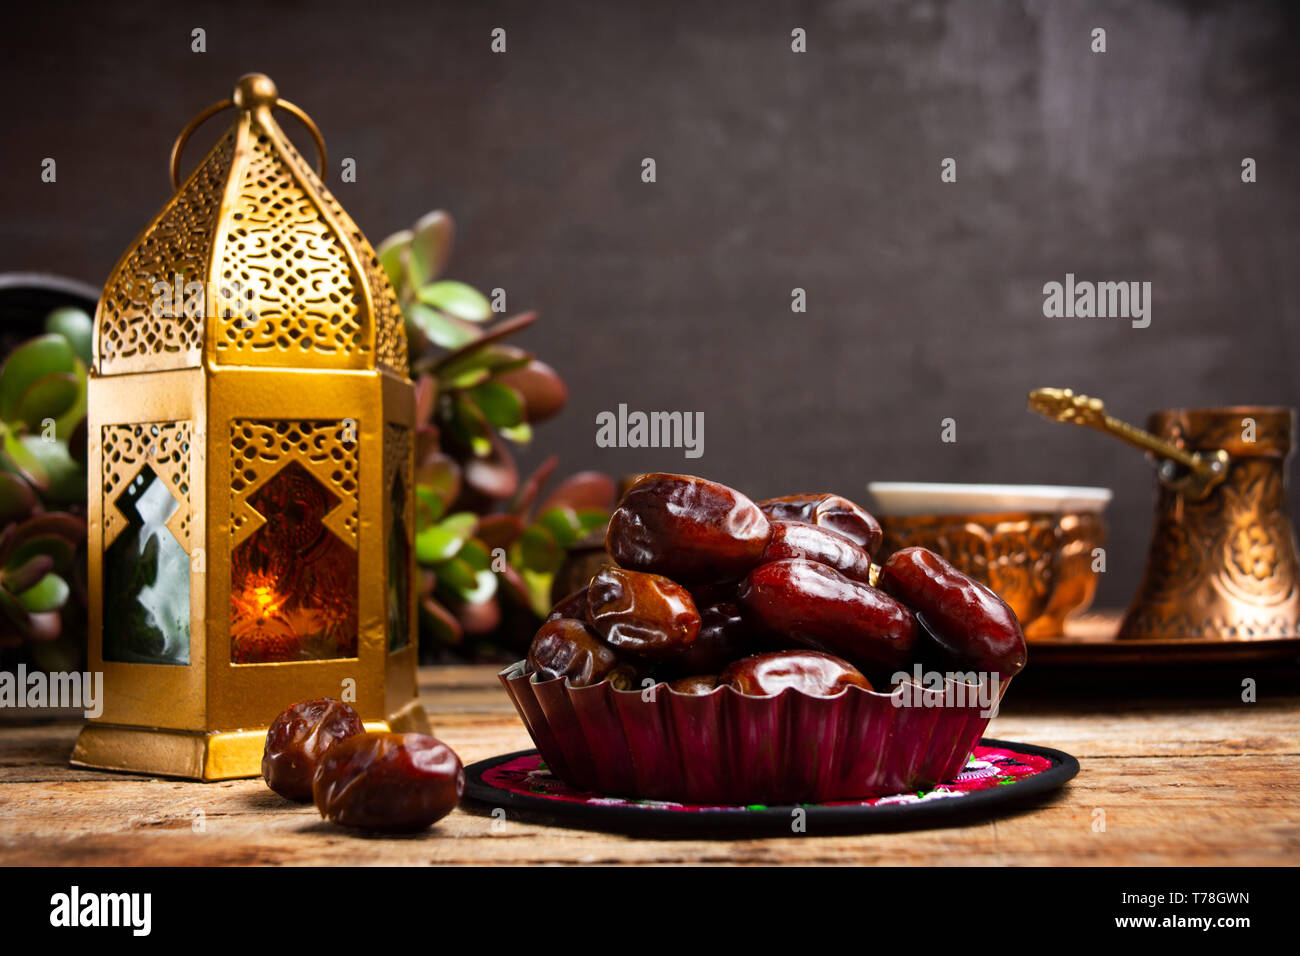 Fechas y lámparas de estilo árabe sobre una mesa con espacio de copia Foto de stock